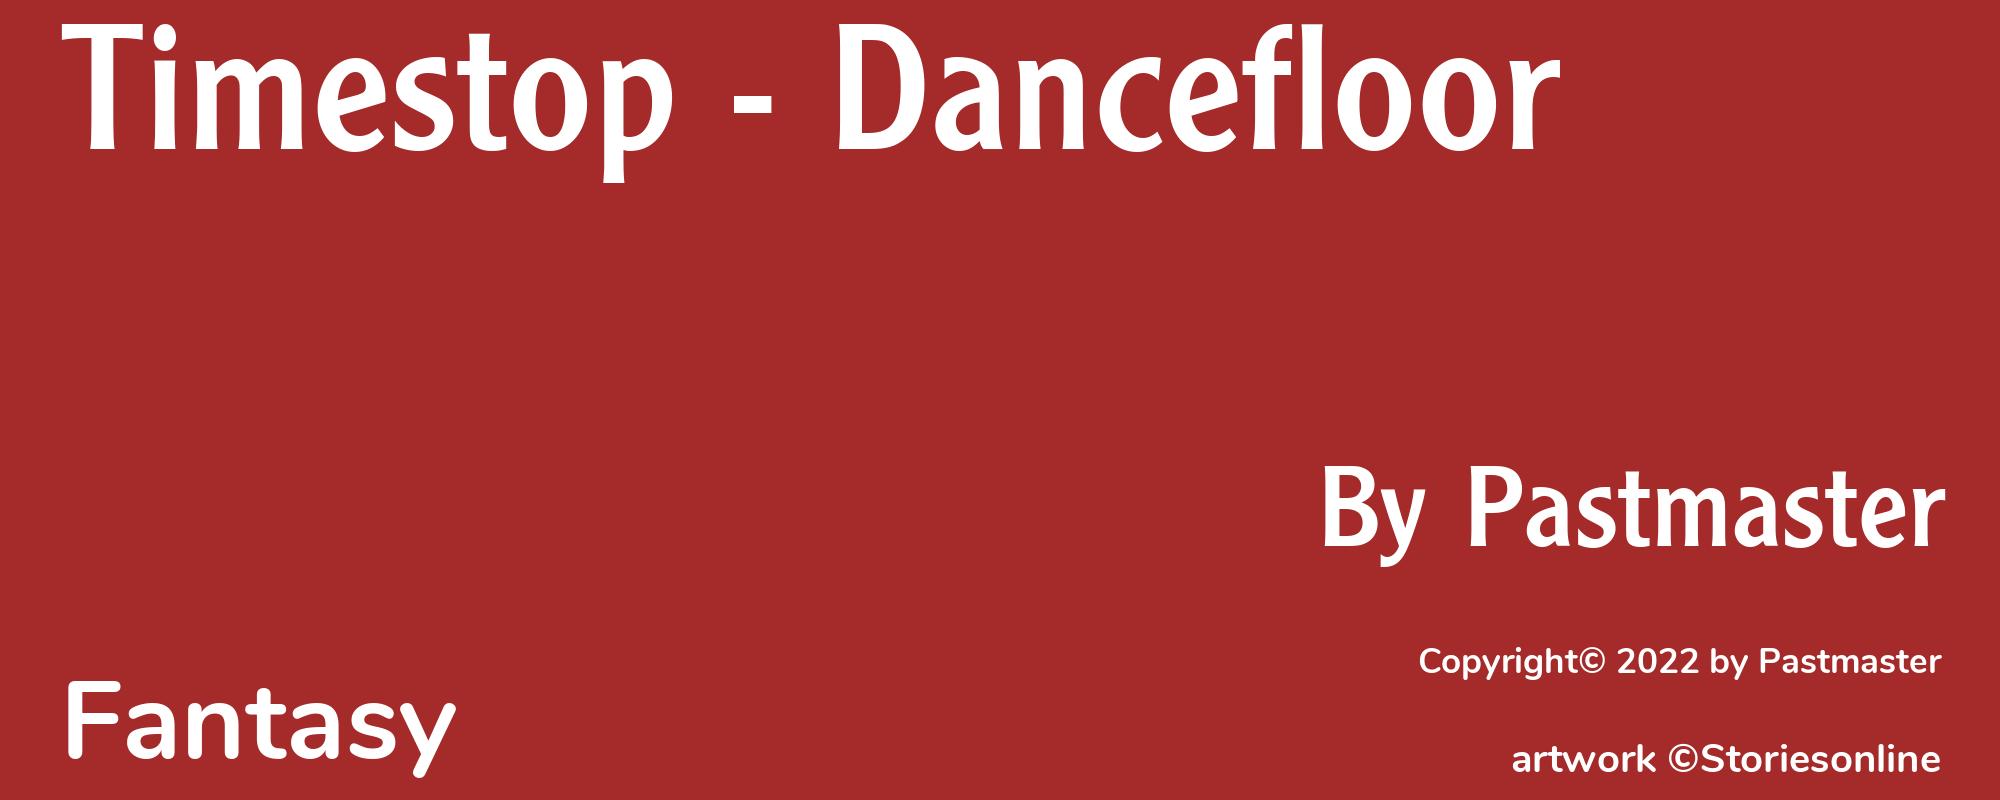 Timestop - Dancefloor - Cover